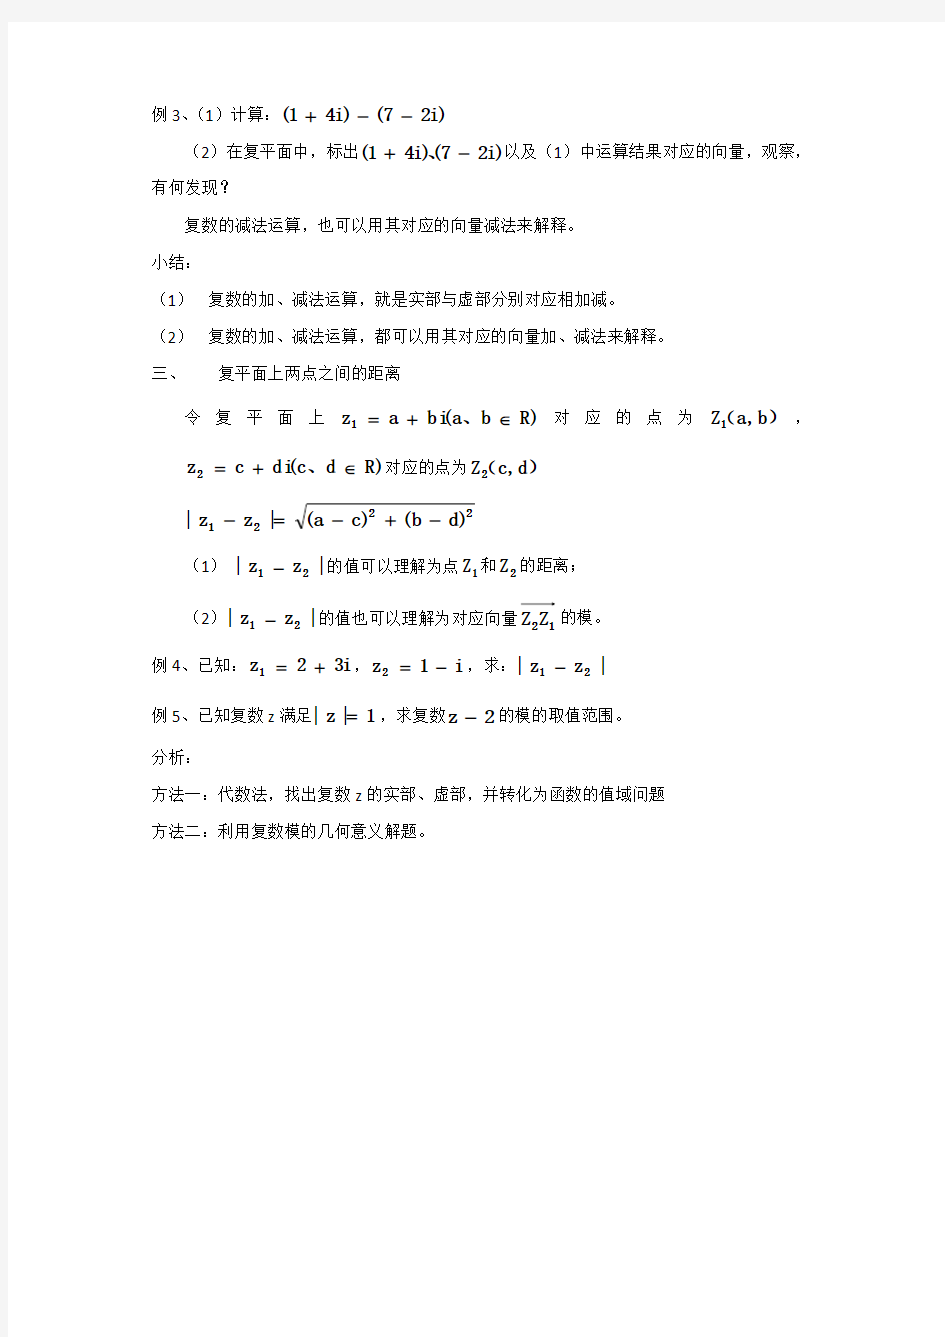 沪教版(上海)数学高二下册-13.3 复数的加减法教案   